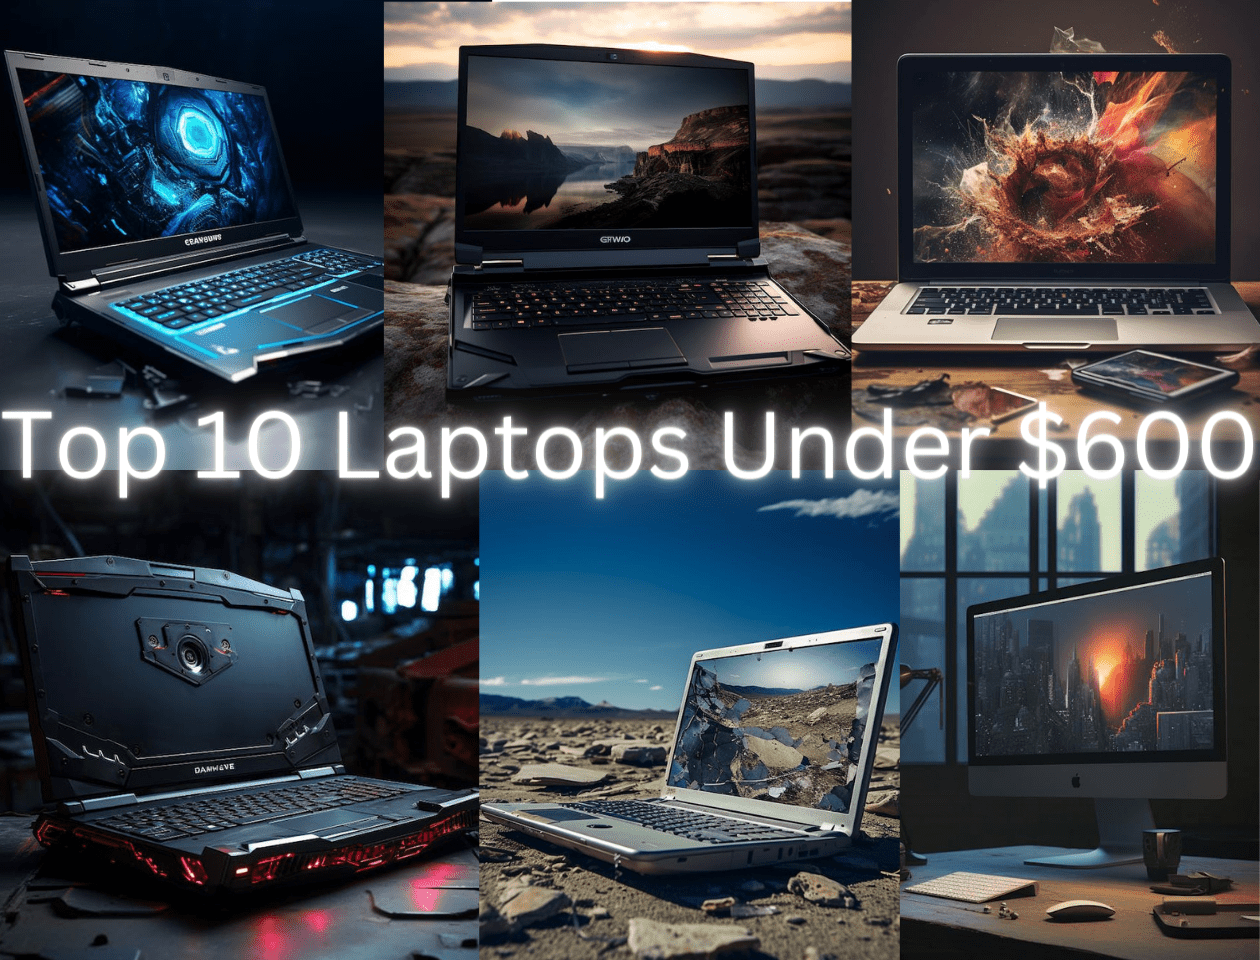 Top 10 Laptops Under $600